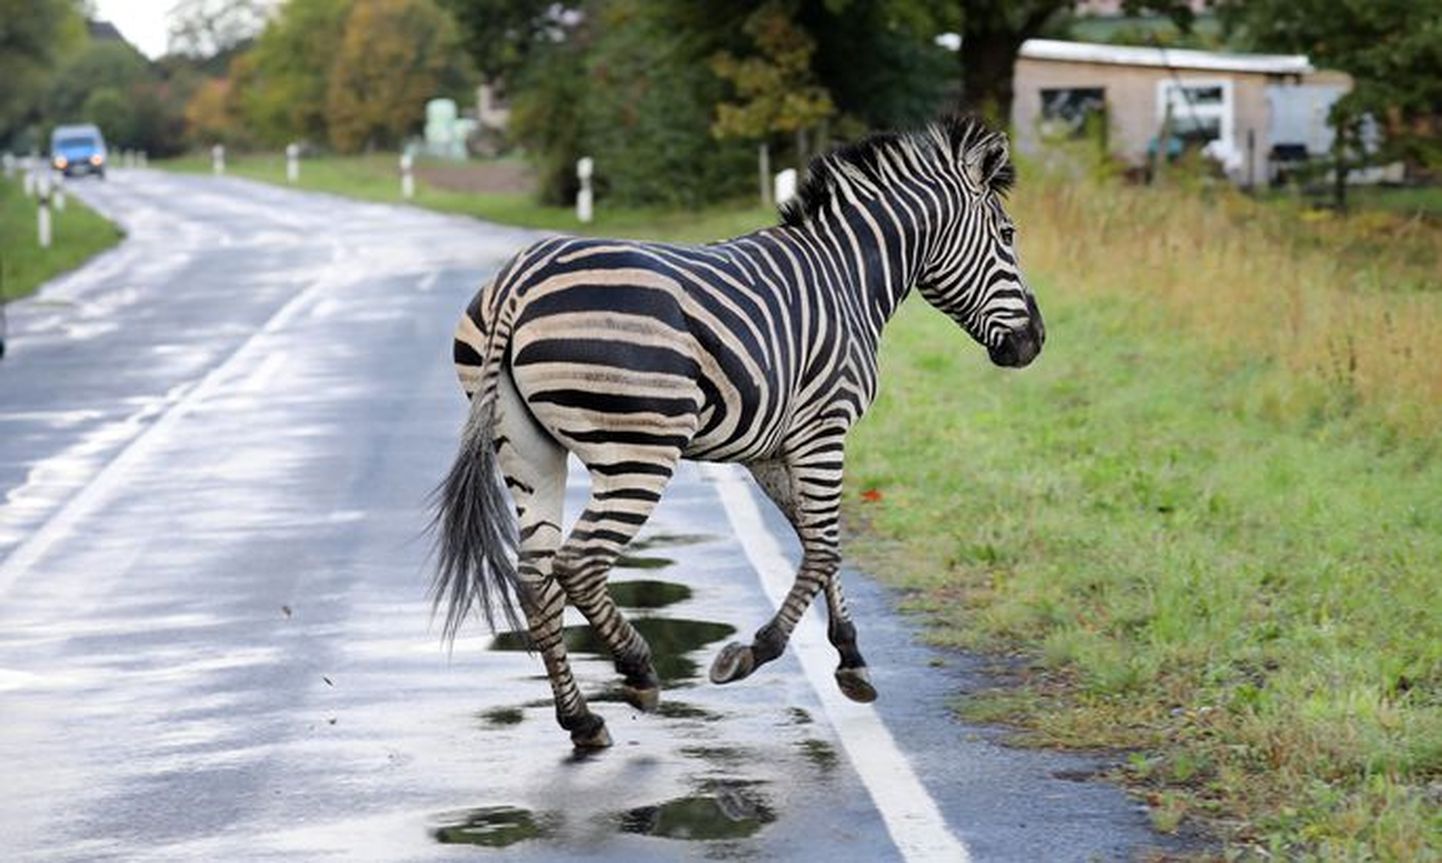 Одна из зебр убежала с автобана на второстепенную дорогу, где и погибла.